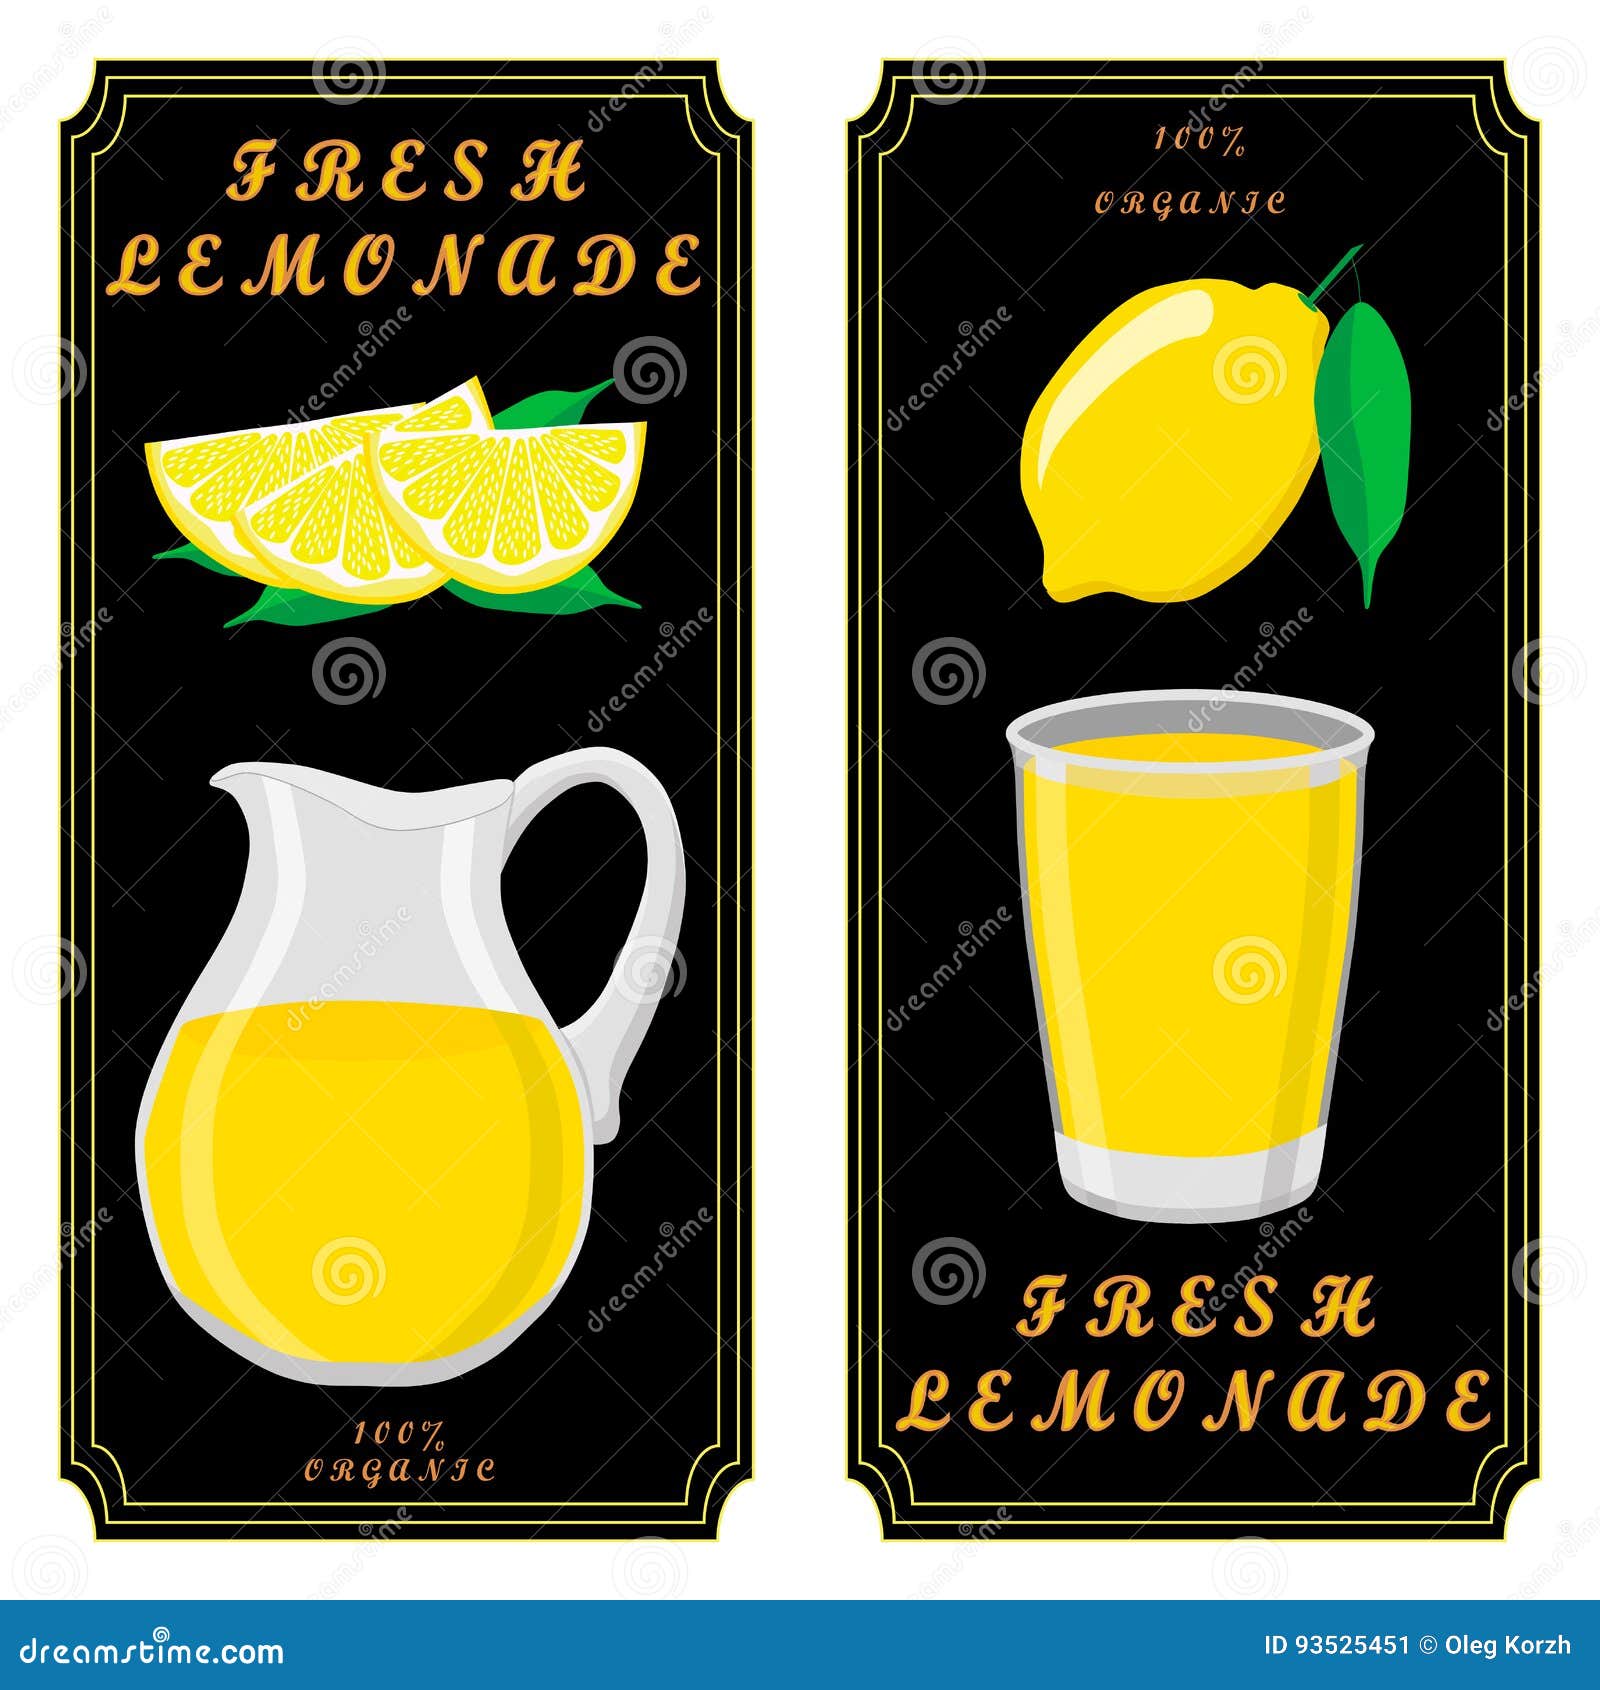 Wektorowy ilustracyjny logo dla żółtego dzbanka lemoniady cytryny ciekłego tła Dzbanka deseniowy składać się z szklany miotacz wypełniam nawadnia lemoniada naturalnego produkt Lemoniada napoju świeży surowy organicznie ciecz dzbanki